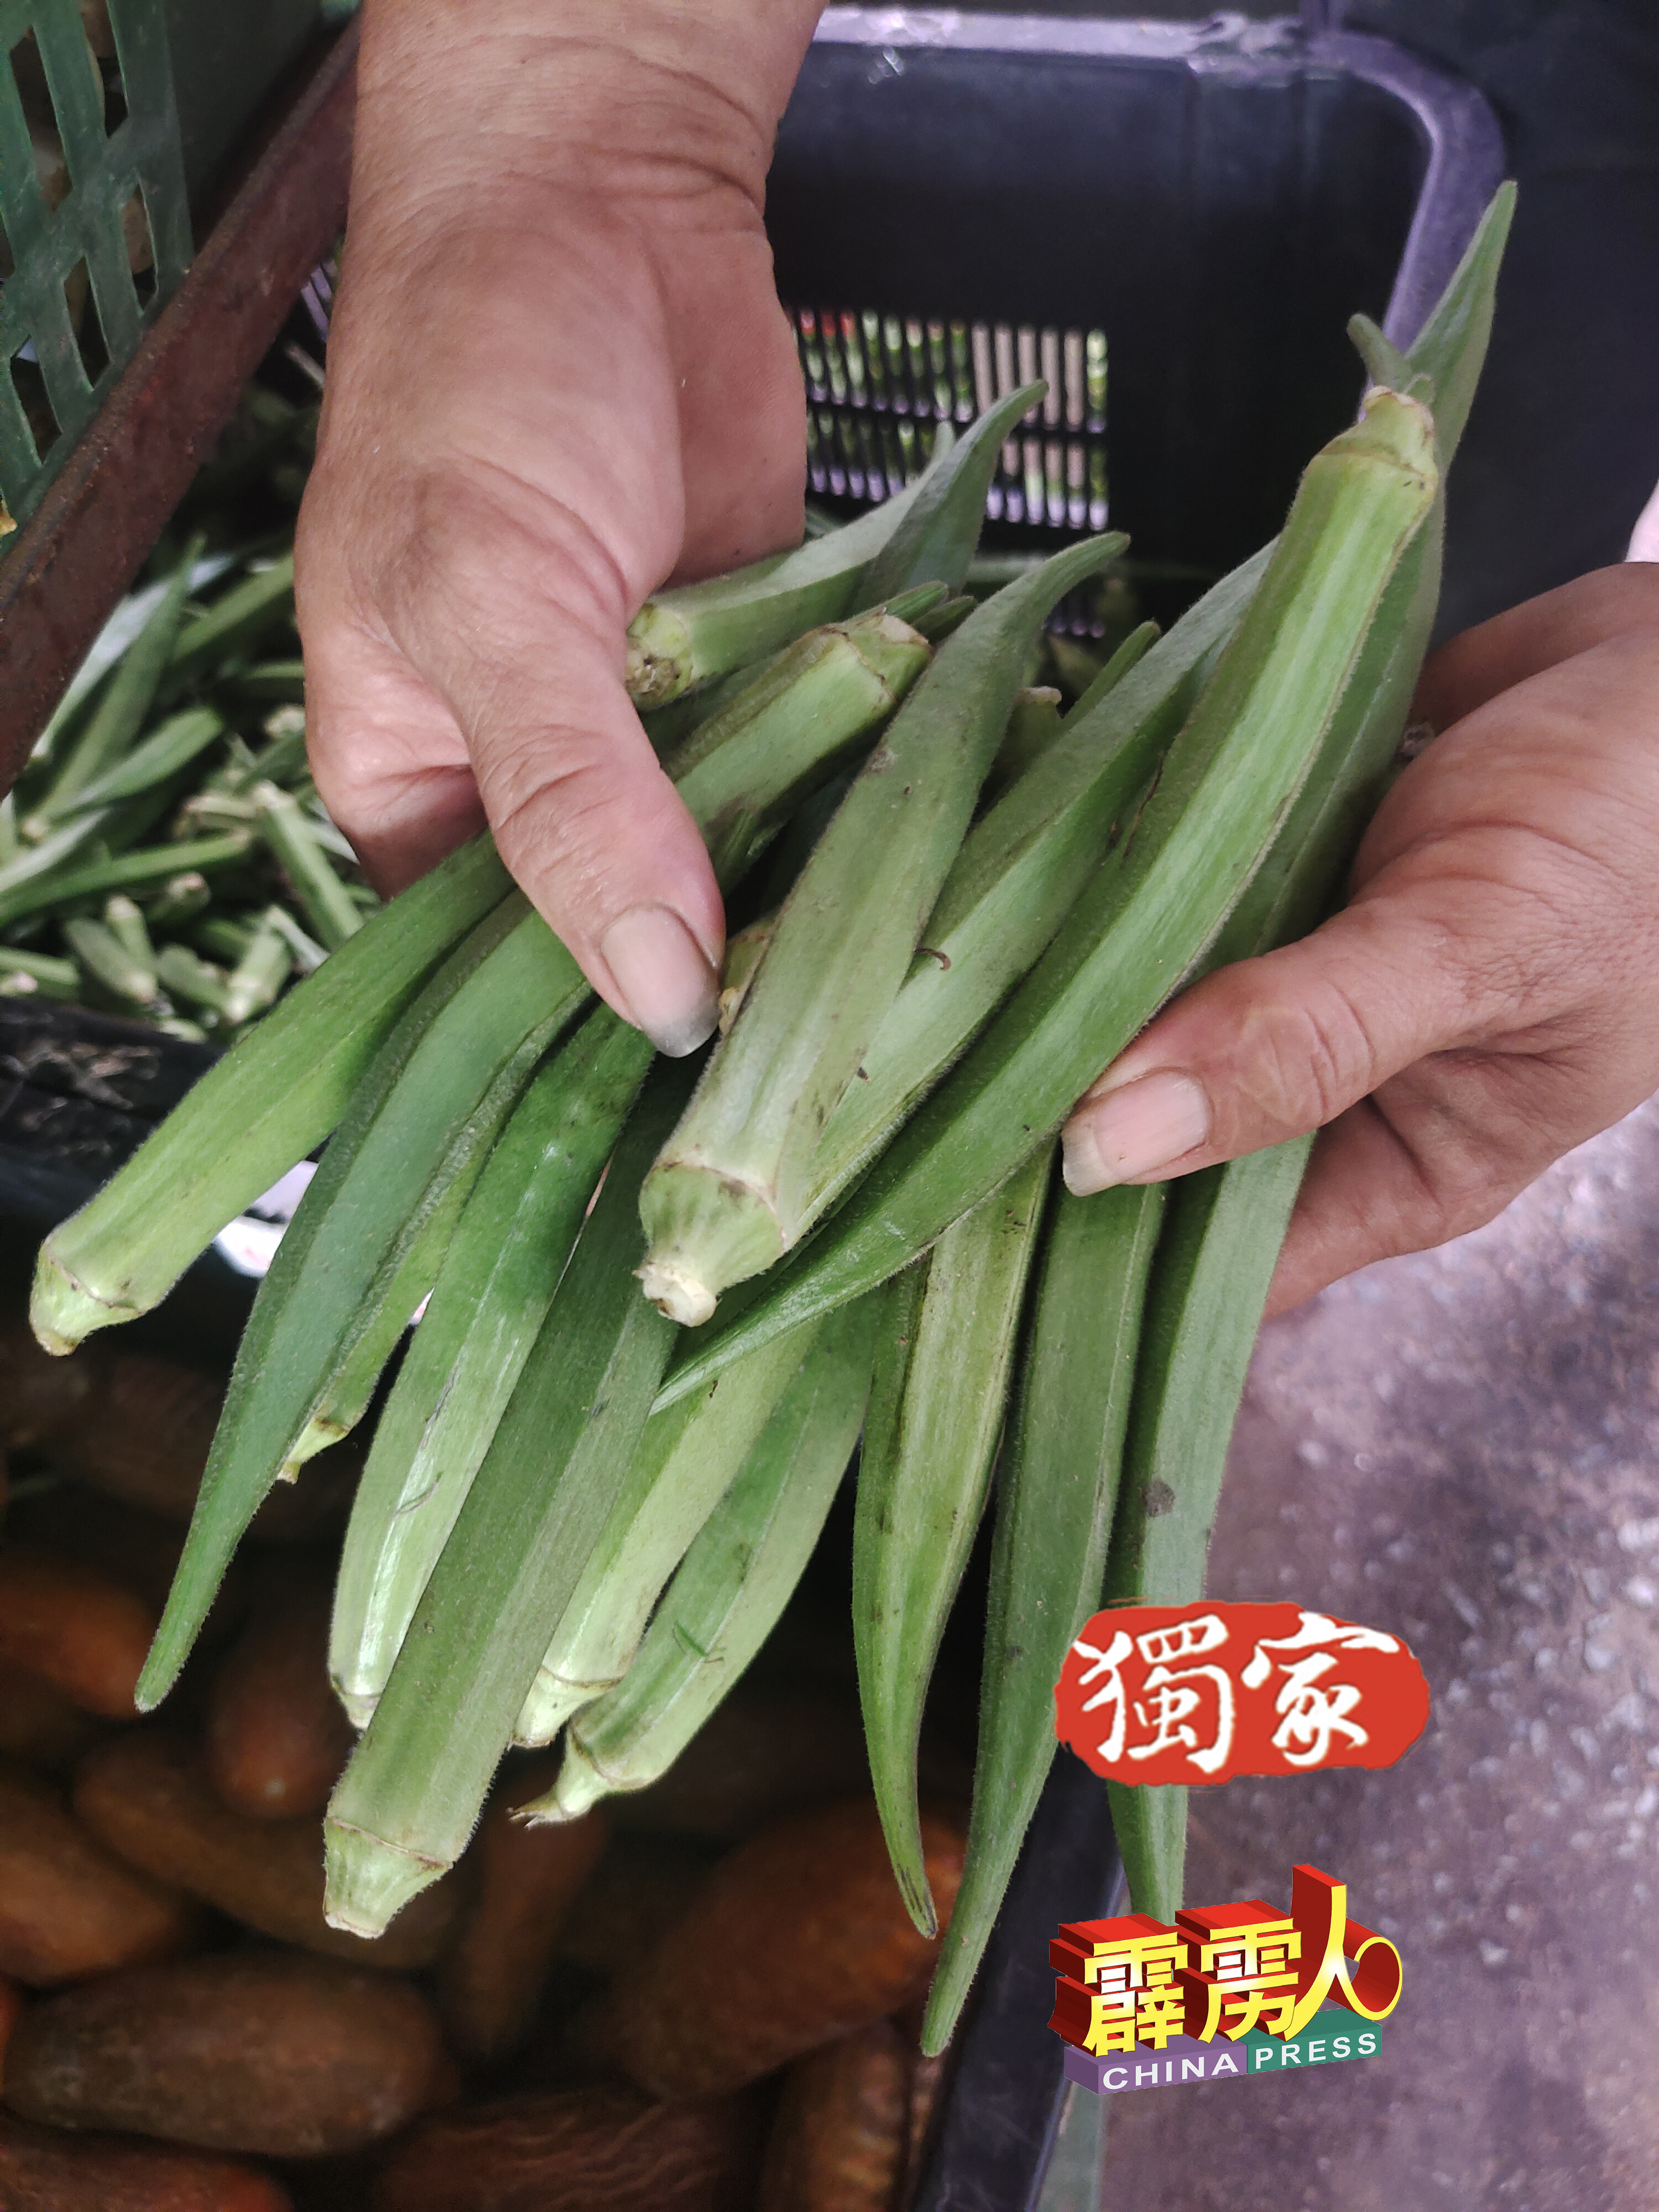 羊角豆目前在江沙巴刹的零售价是每公斤8令吉。